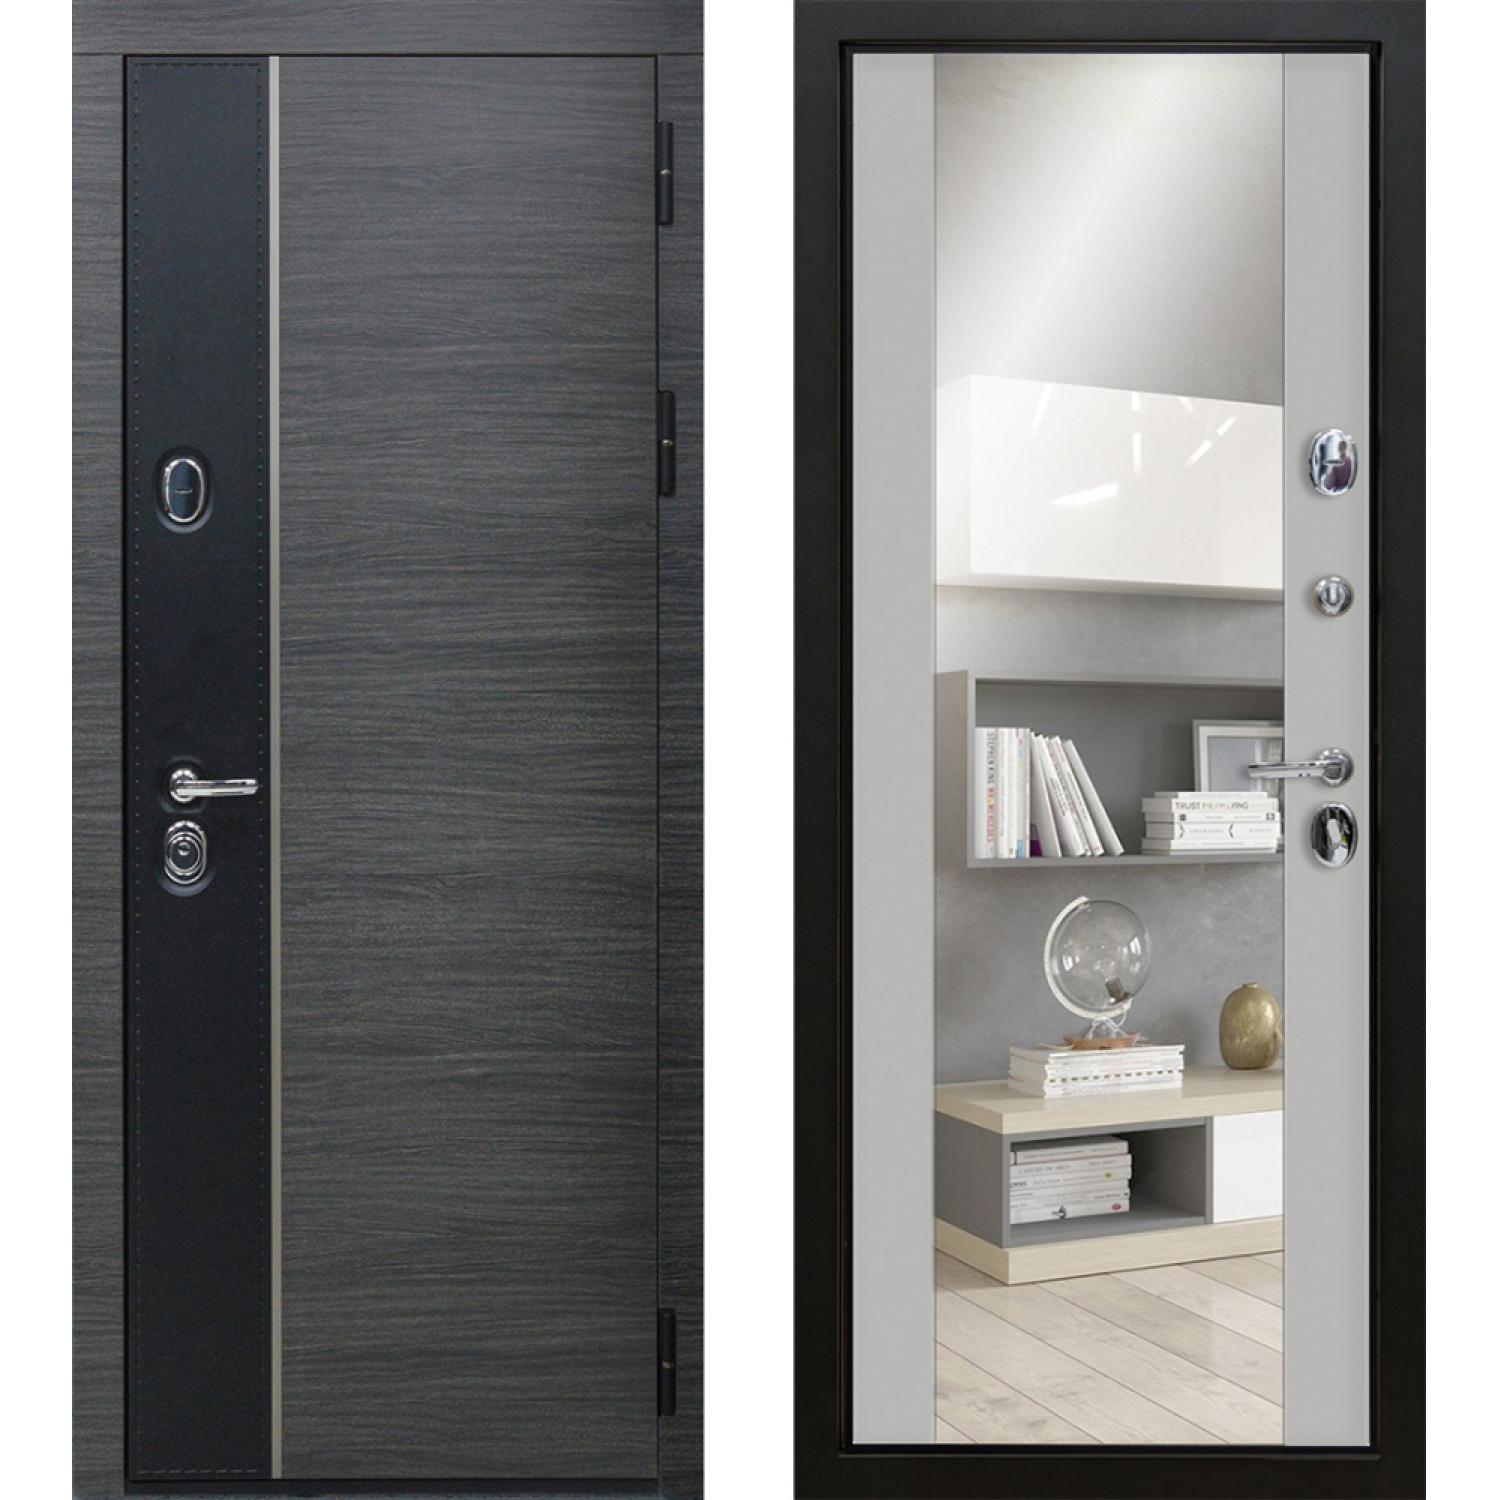 Стило (960*2050 L, Венге серый (ПВХ) + вставка черный (ПВХ), Манхэттен (эмаль) + зеркало, Заказная)